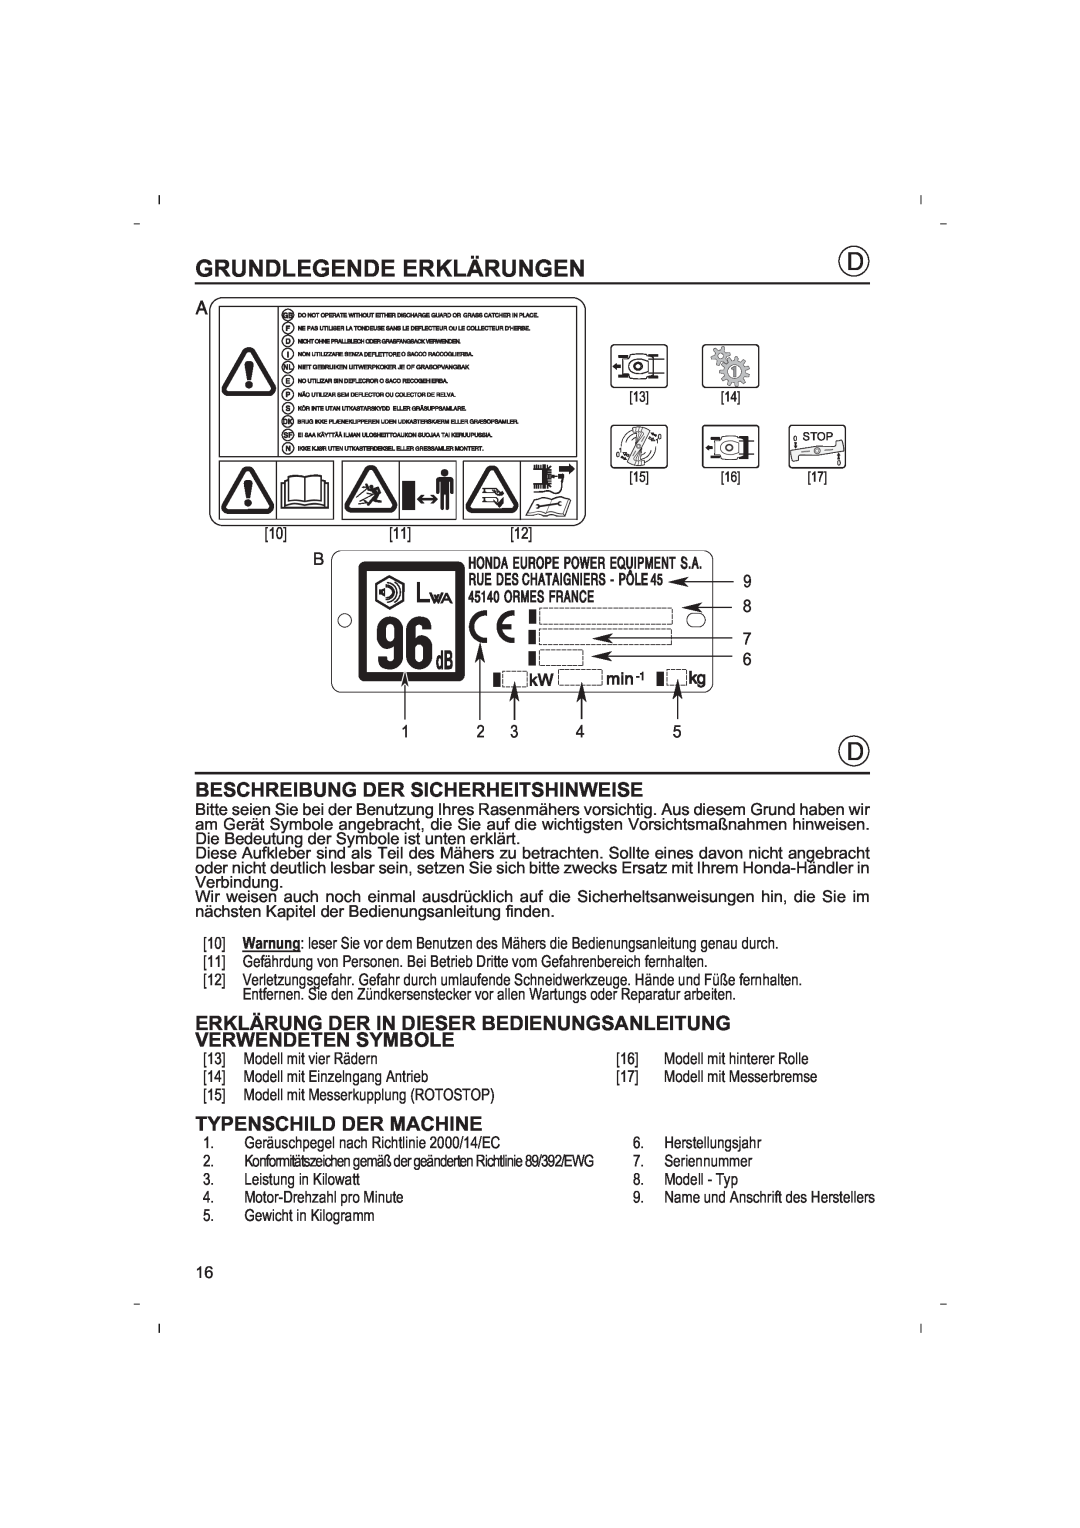 Honda Power Equipment HRB425C Grundlegende Erklärungen, Beschreibung Der Sicherheitshinweise, Typenschild Der Machine 